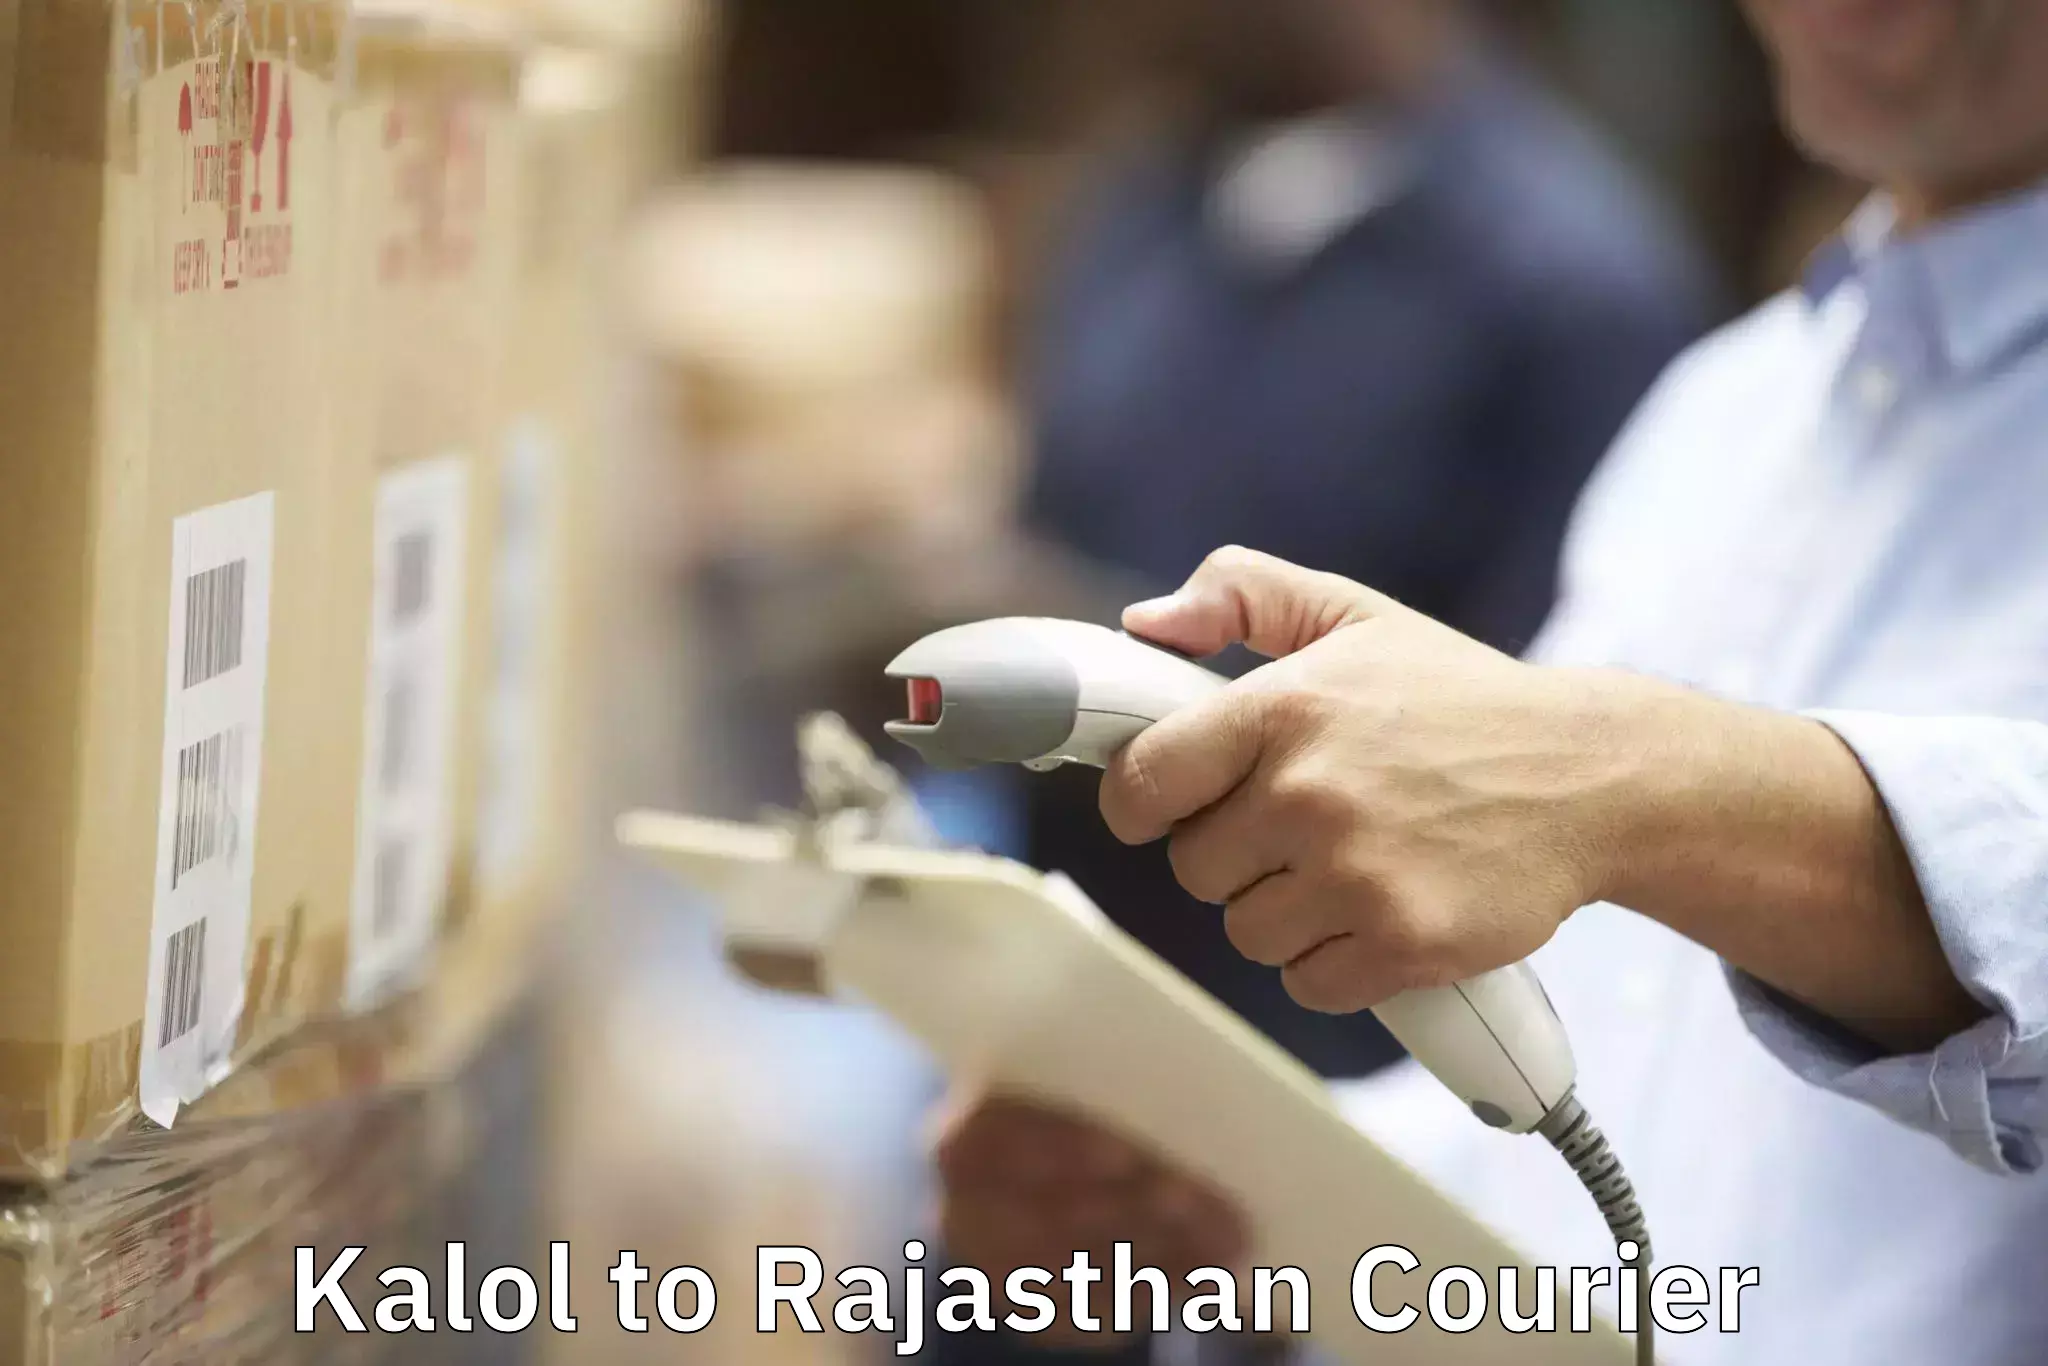 Furniture moving plans Kalol to Rajasthan